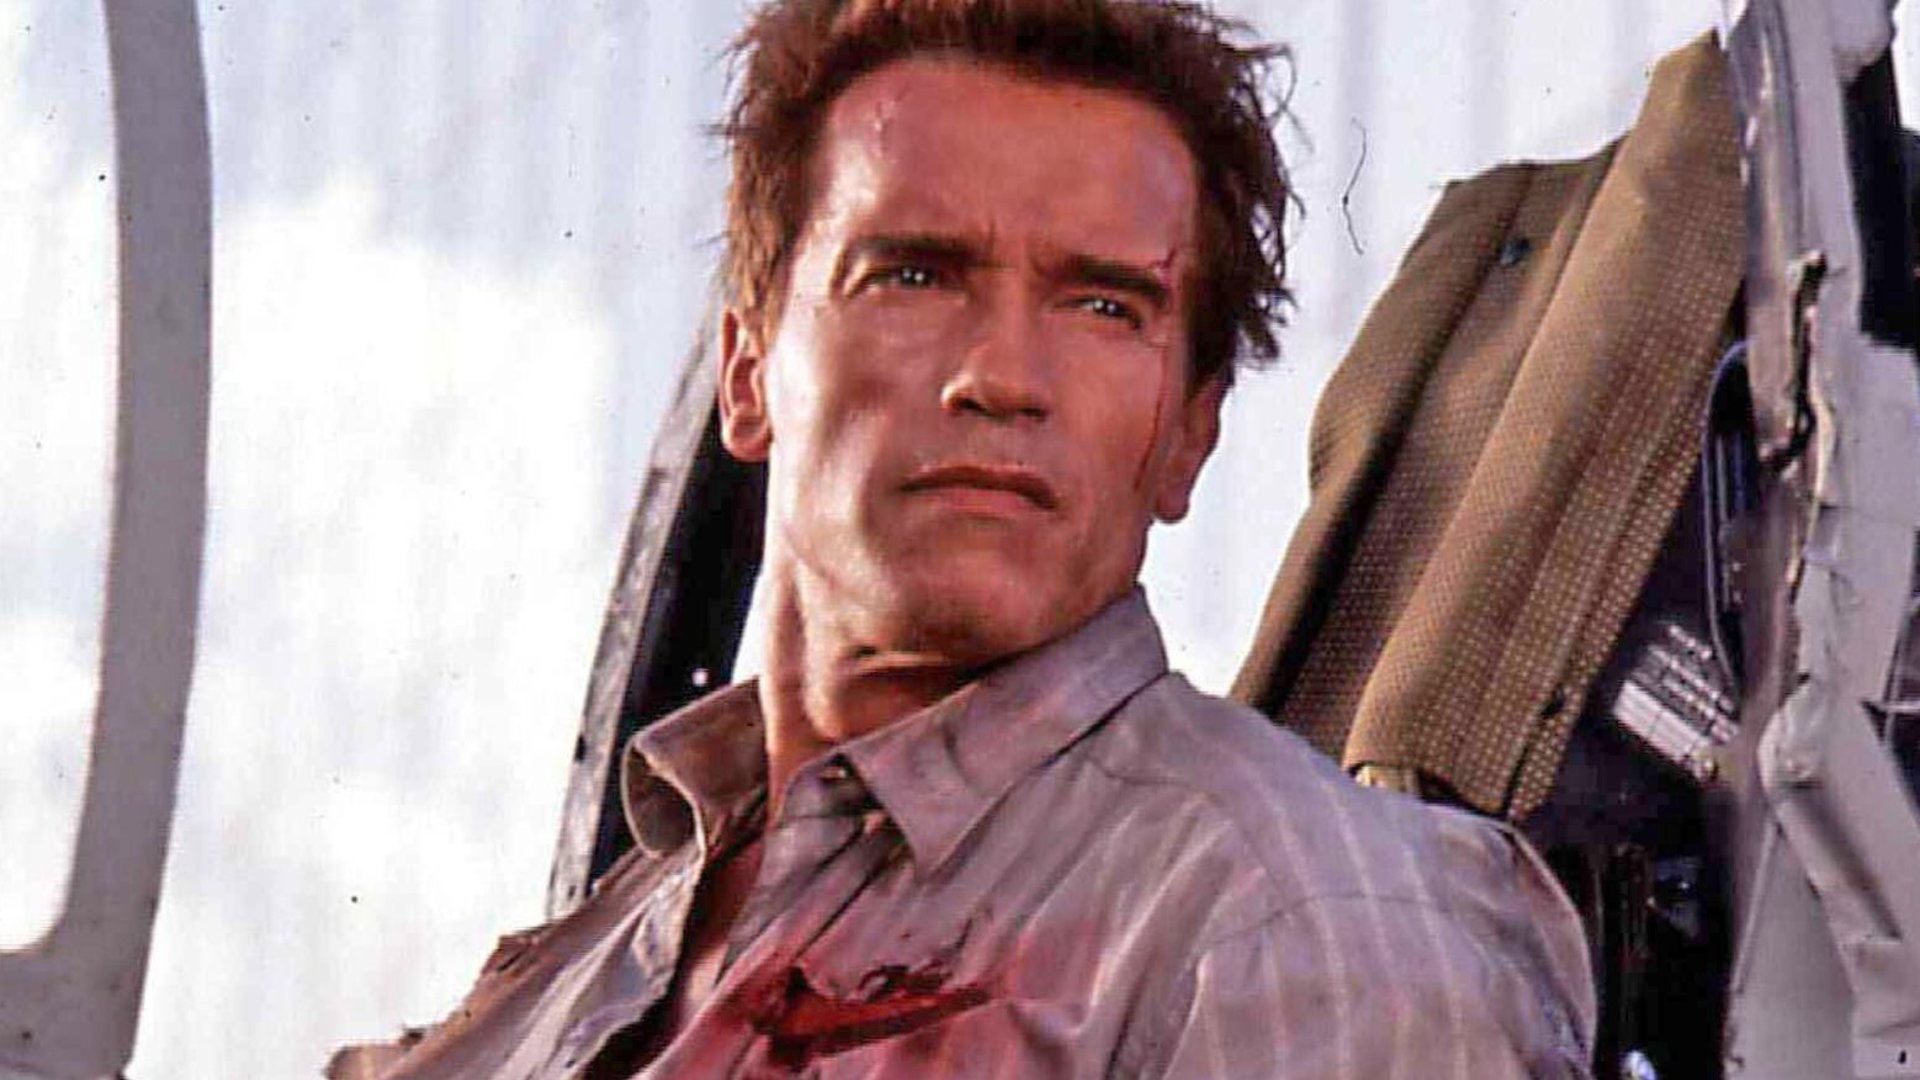 #Samstag im TV: Überragender Actionkracher mit Arnold Schwarzenegger, der oft übersehen wird